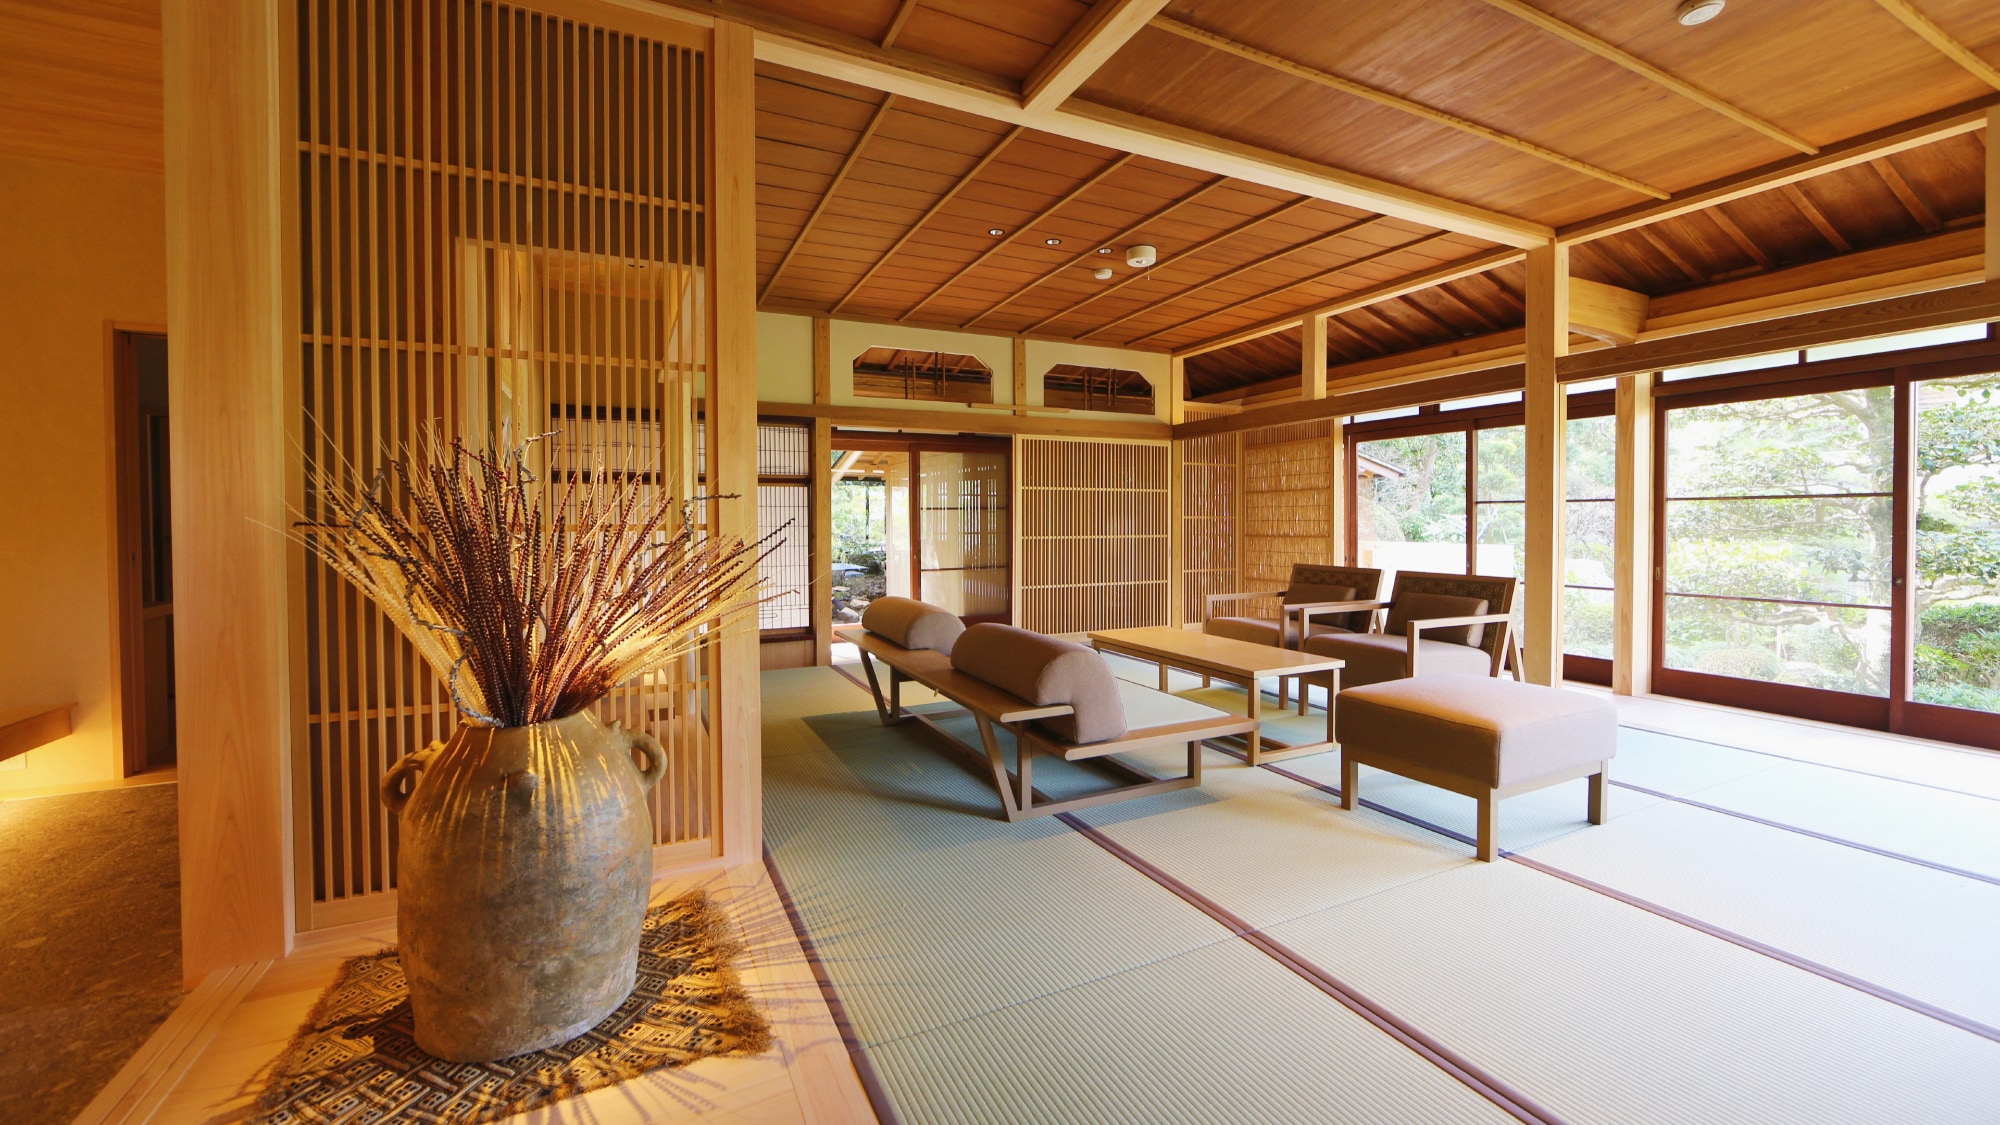 ห้องนั่งเล่นที่มีรสนิยมแบบญี่ปุ่นสมัยใหม่ในวิลล่า "Aioi"